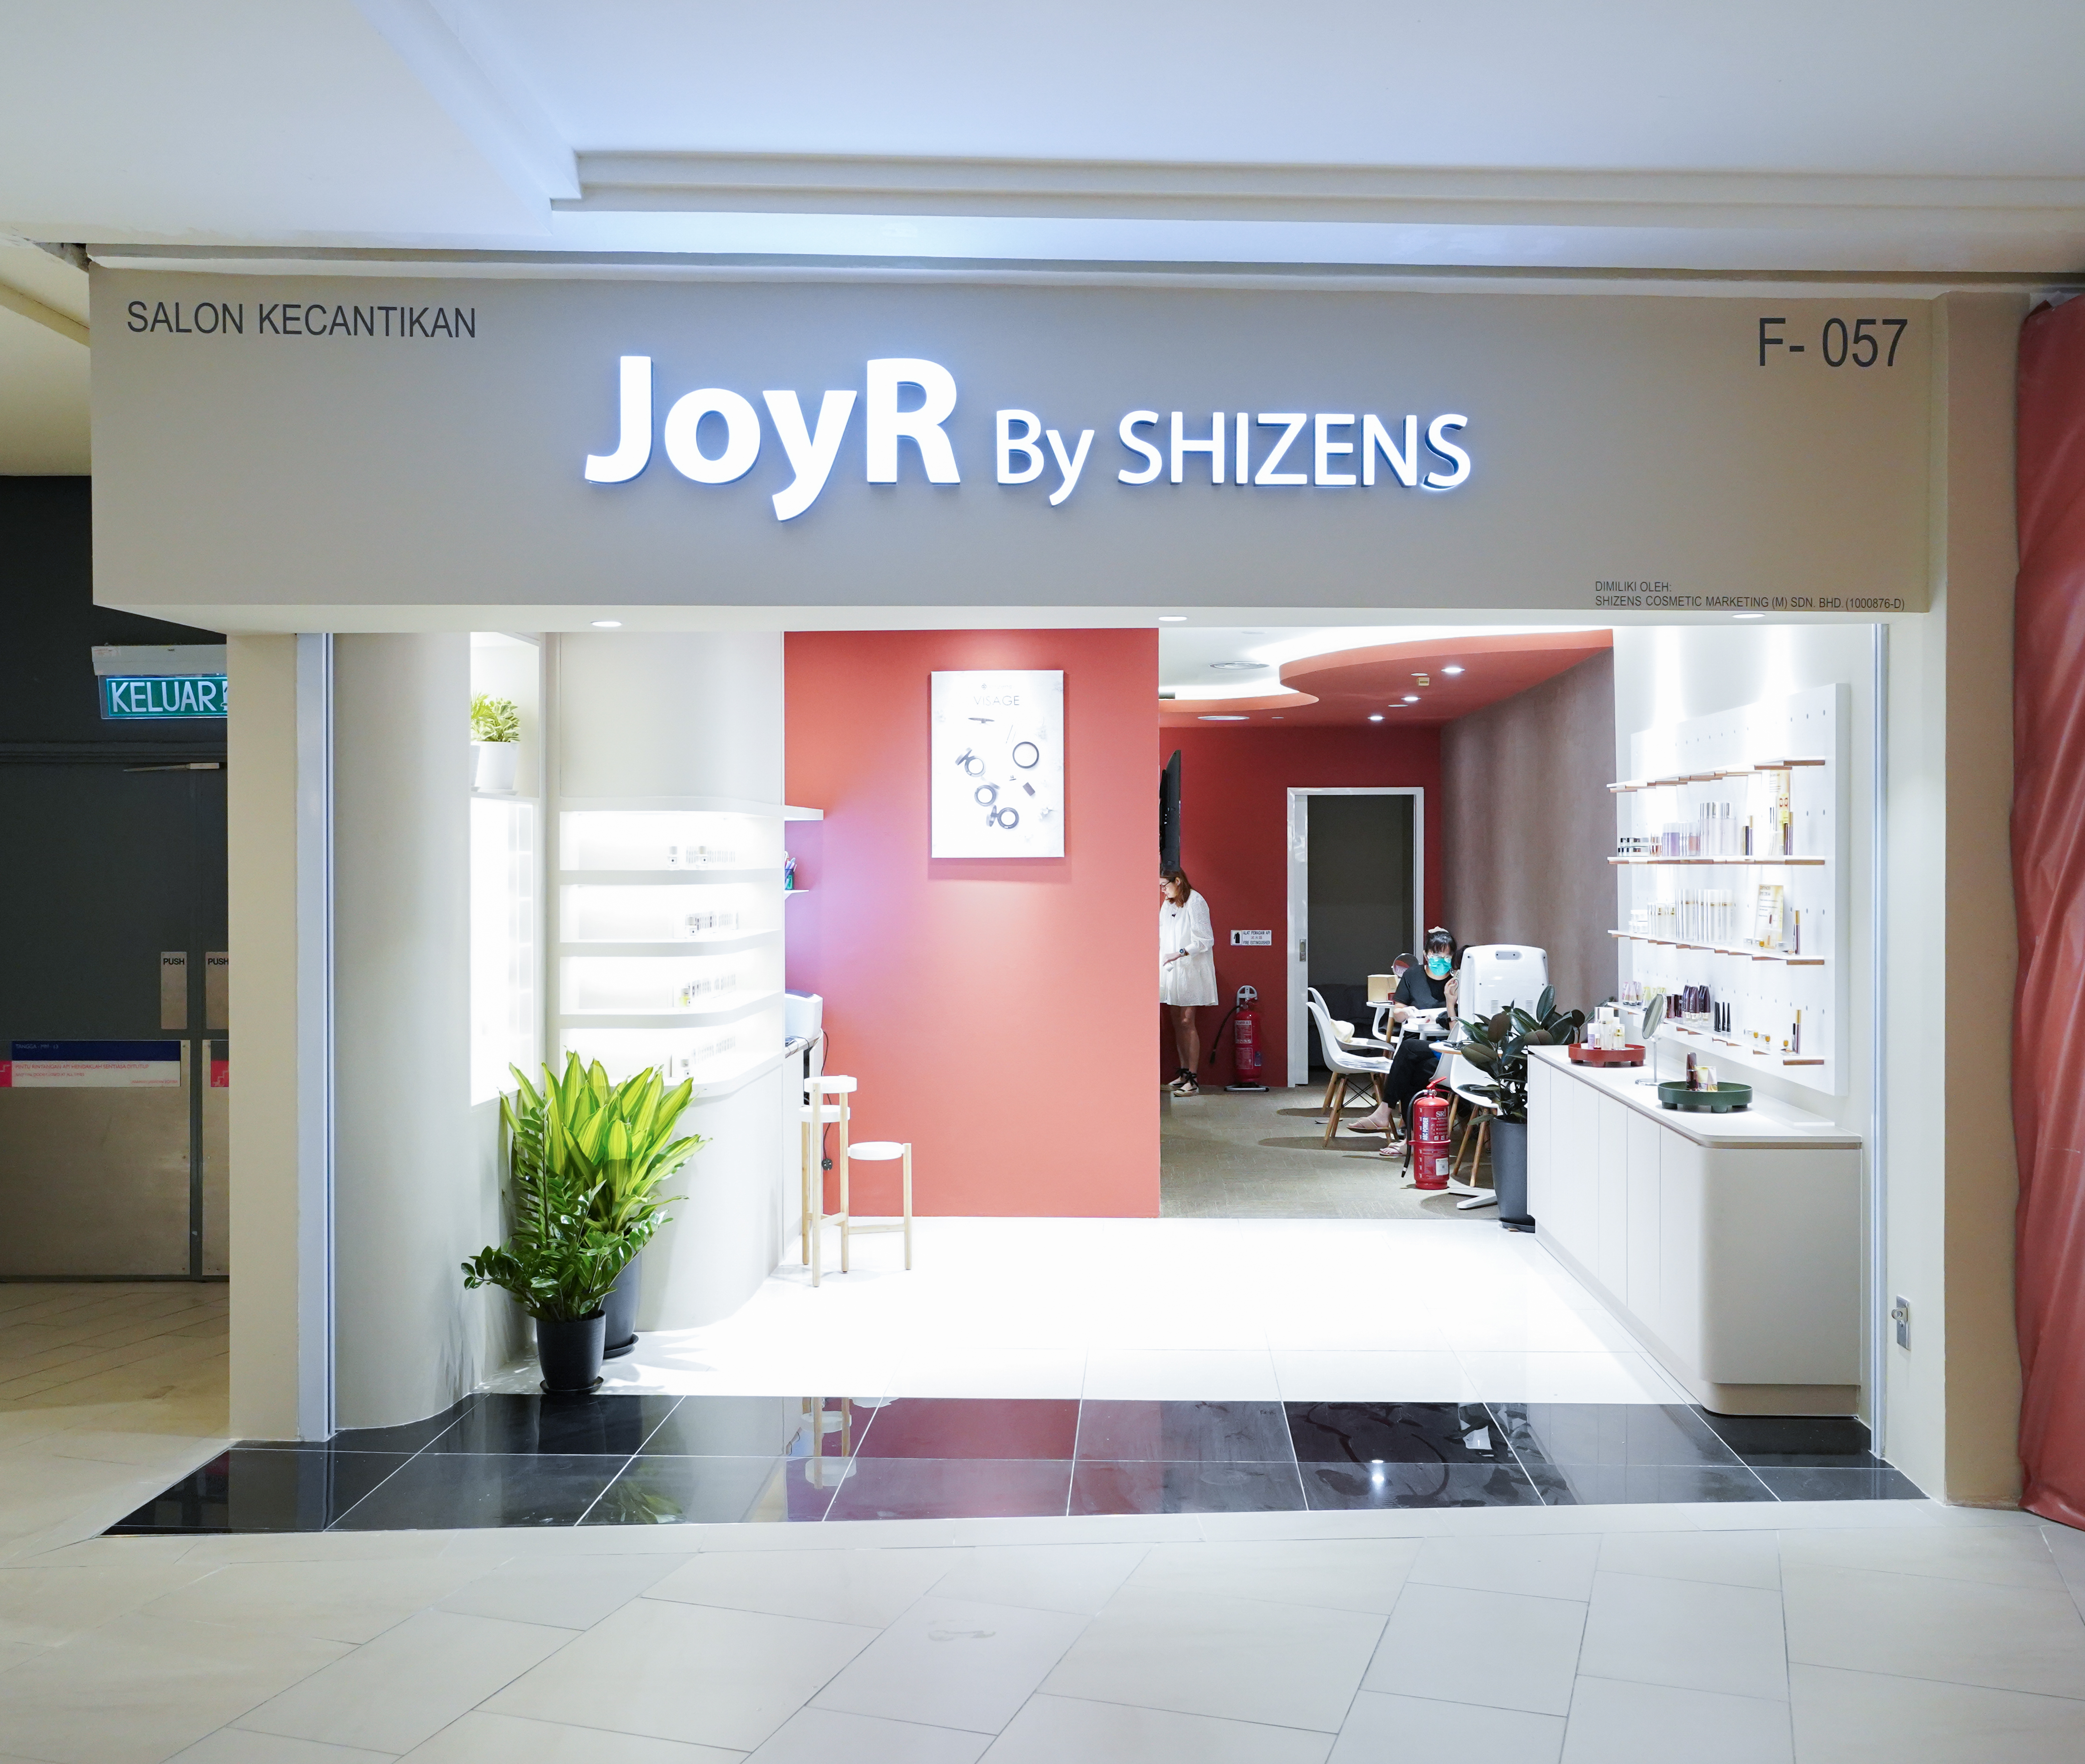 Joy R by Shizens